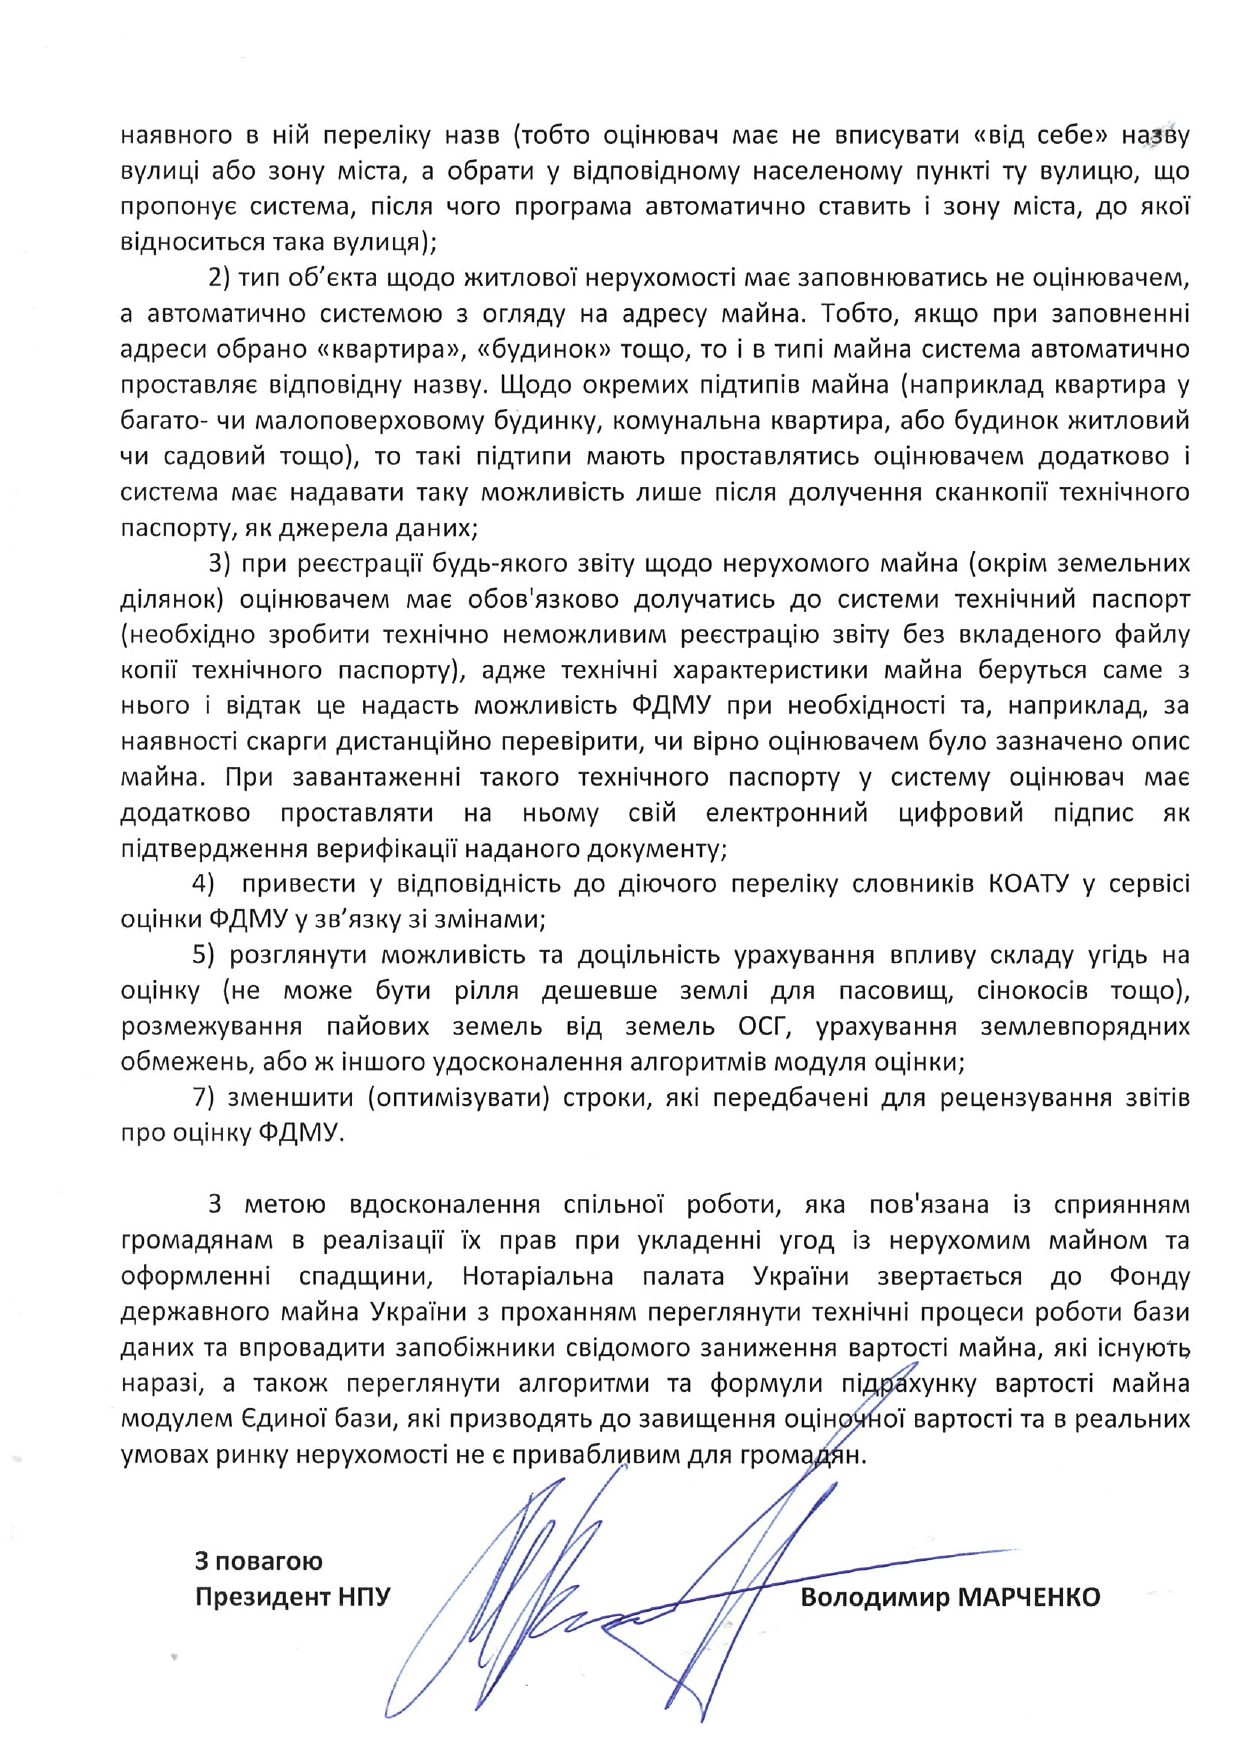 Нотариальная палата Украины направило письмо в Фонд госимущества, в котором заявляет о ""недоразумениях" при распоряжении граждан недвижимостью и претензий к нотариусам